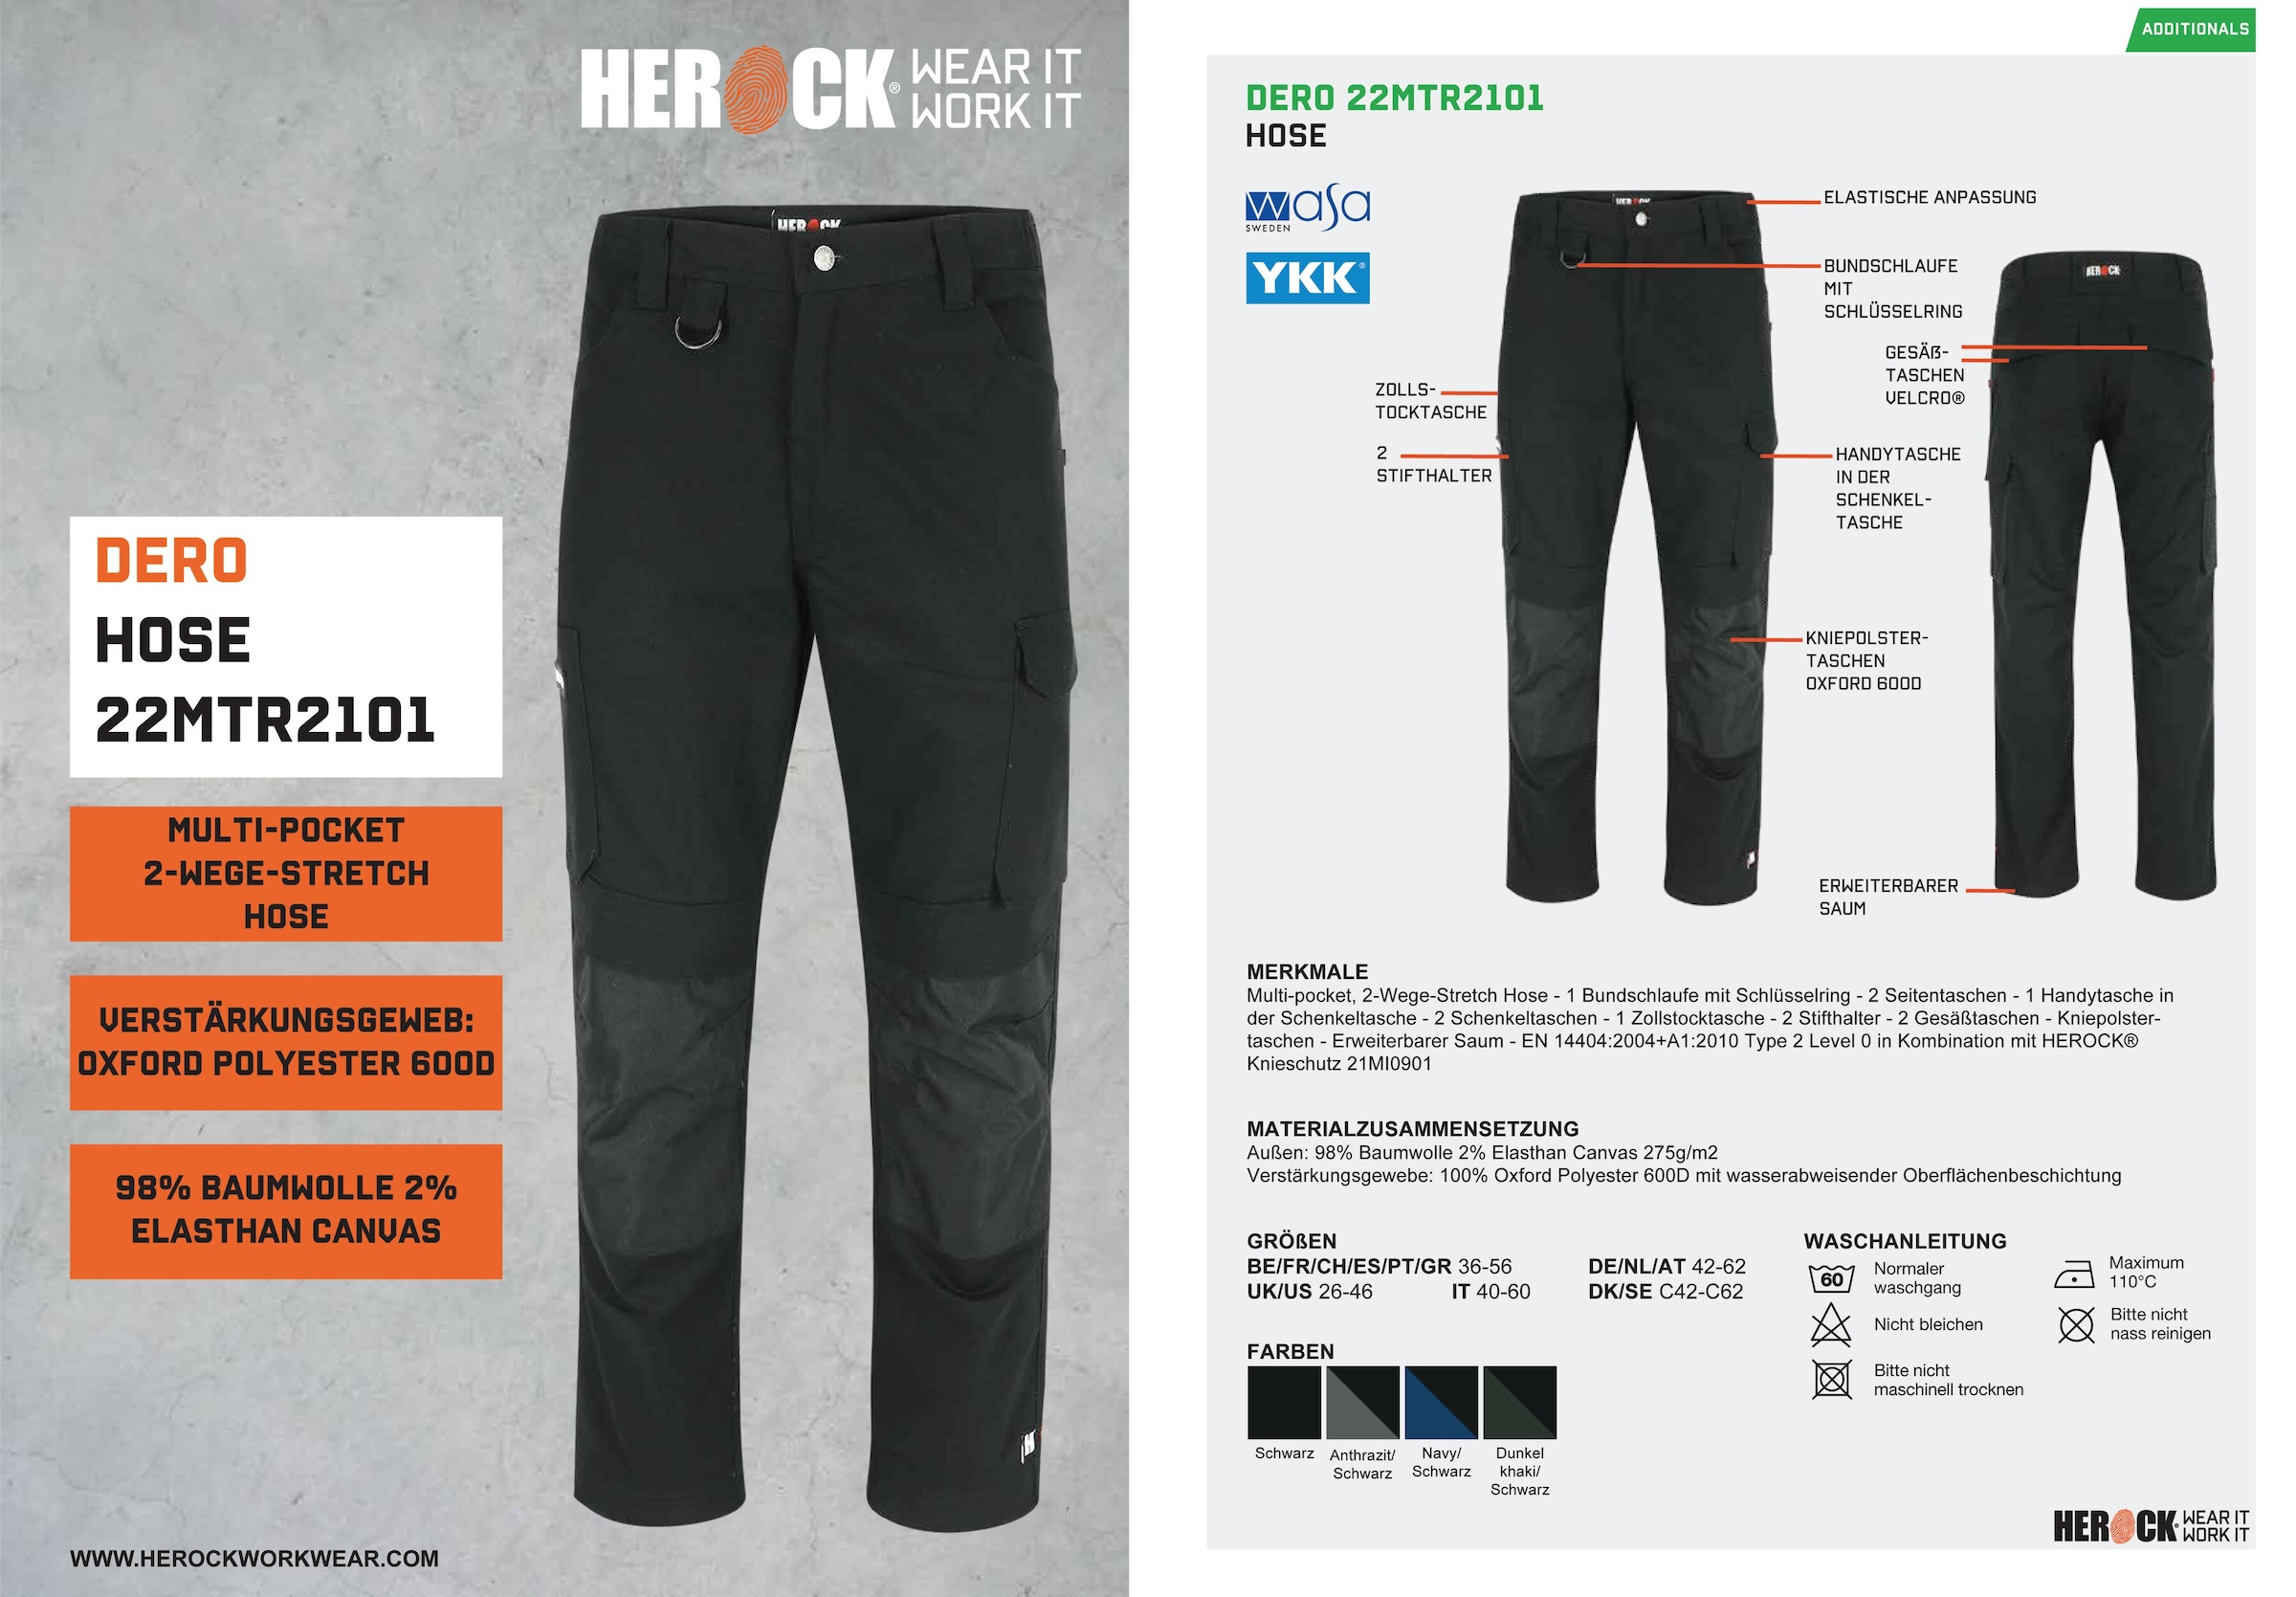 Herock Arbeitshose »DERO«, wasserabweisend bestellen Passform, Fit Slim Multi-Pocket, online 2-Wege-Stretch